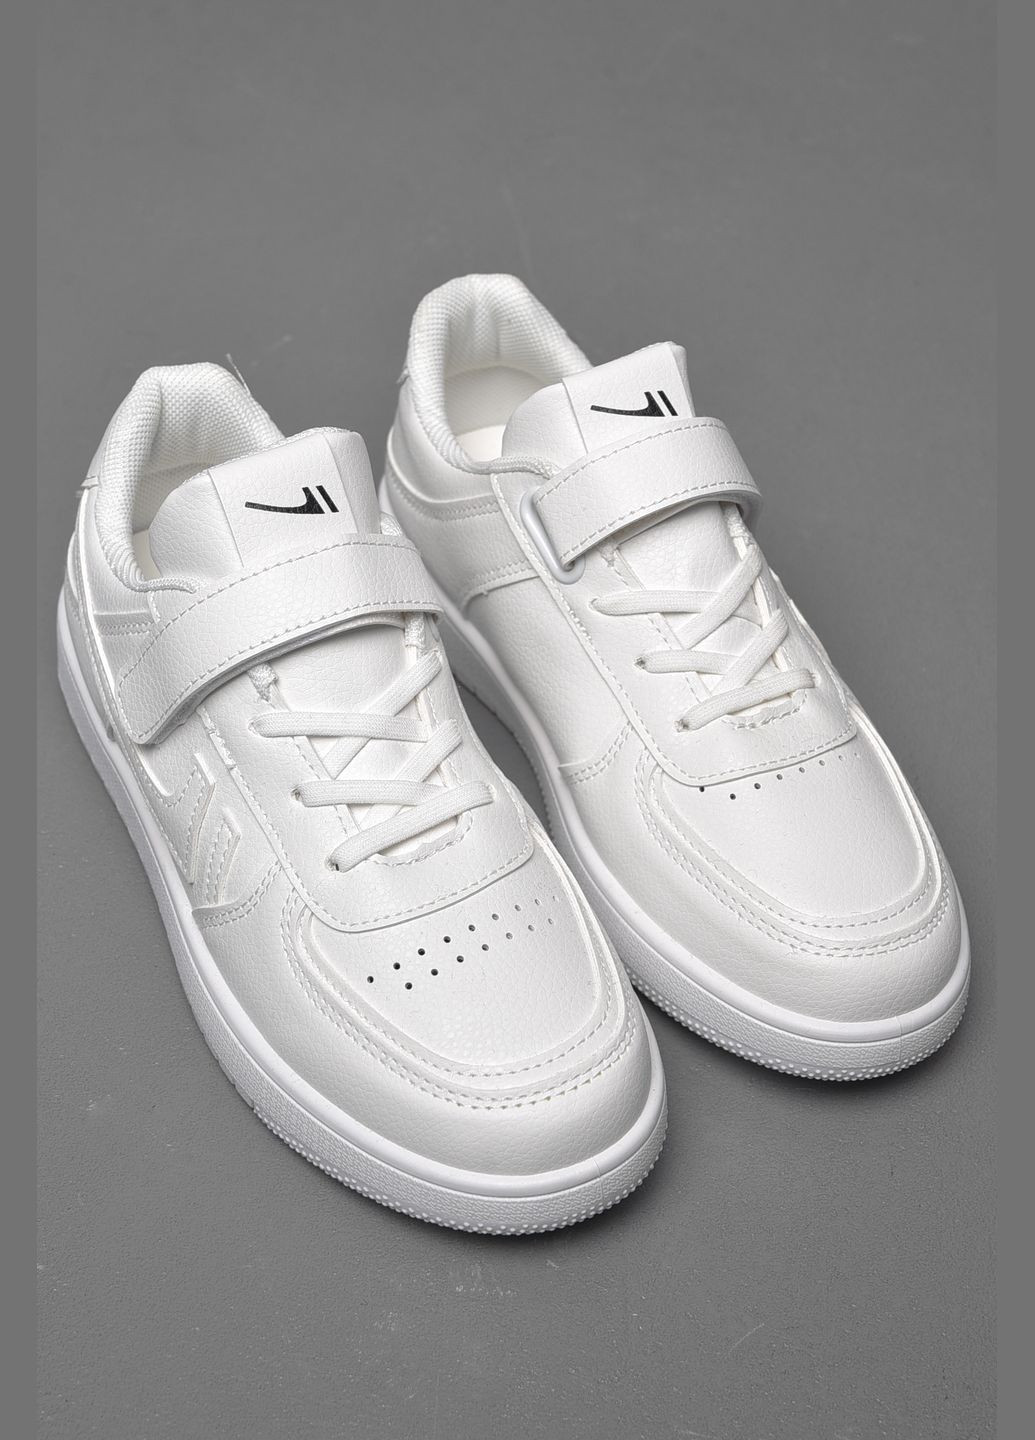 Білі осінні кросівки дитячі білого кольору на ліпучках Let's Shop